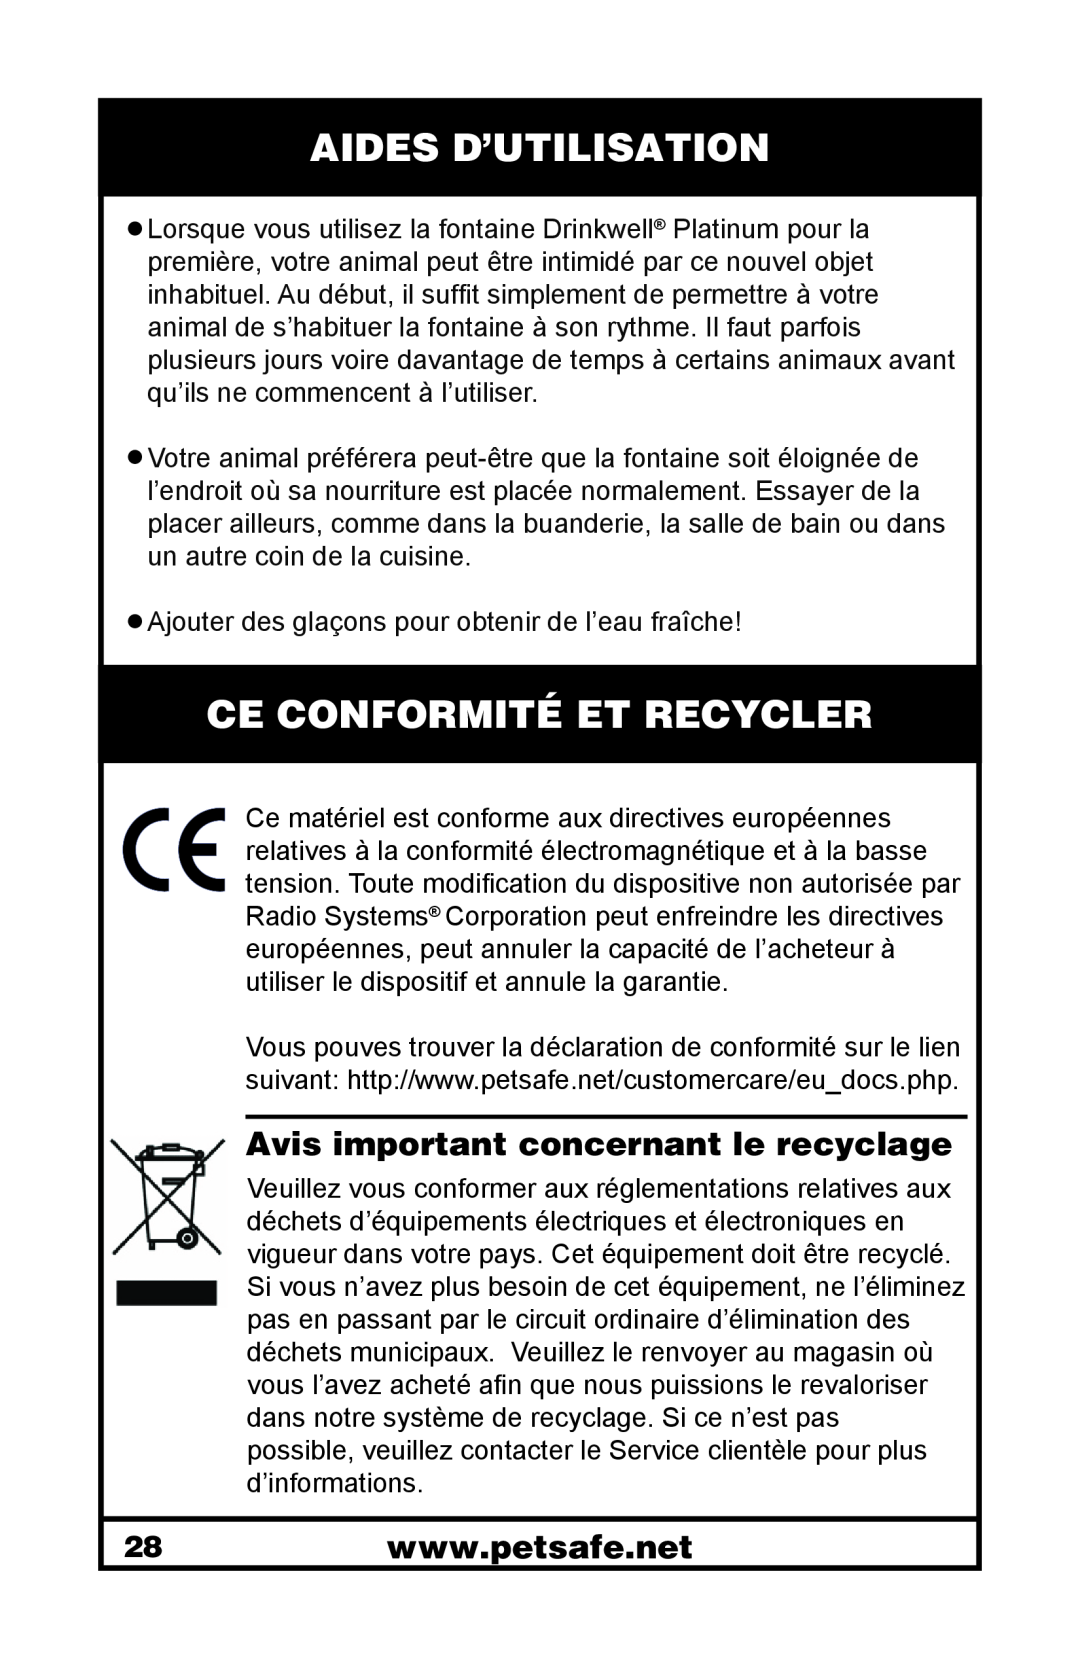 Petsafe 400-1255-19 Aides D’Utilisation, Ce Conformité Et Recycler, Avis important concernant le recyclage 